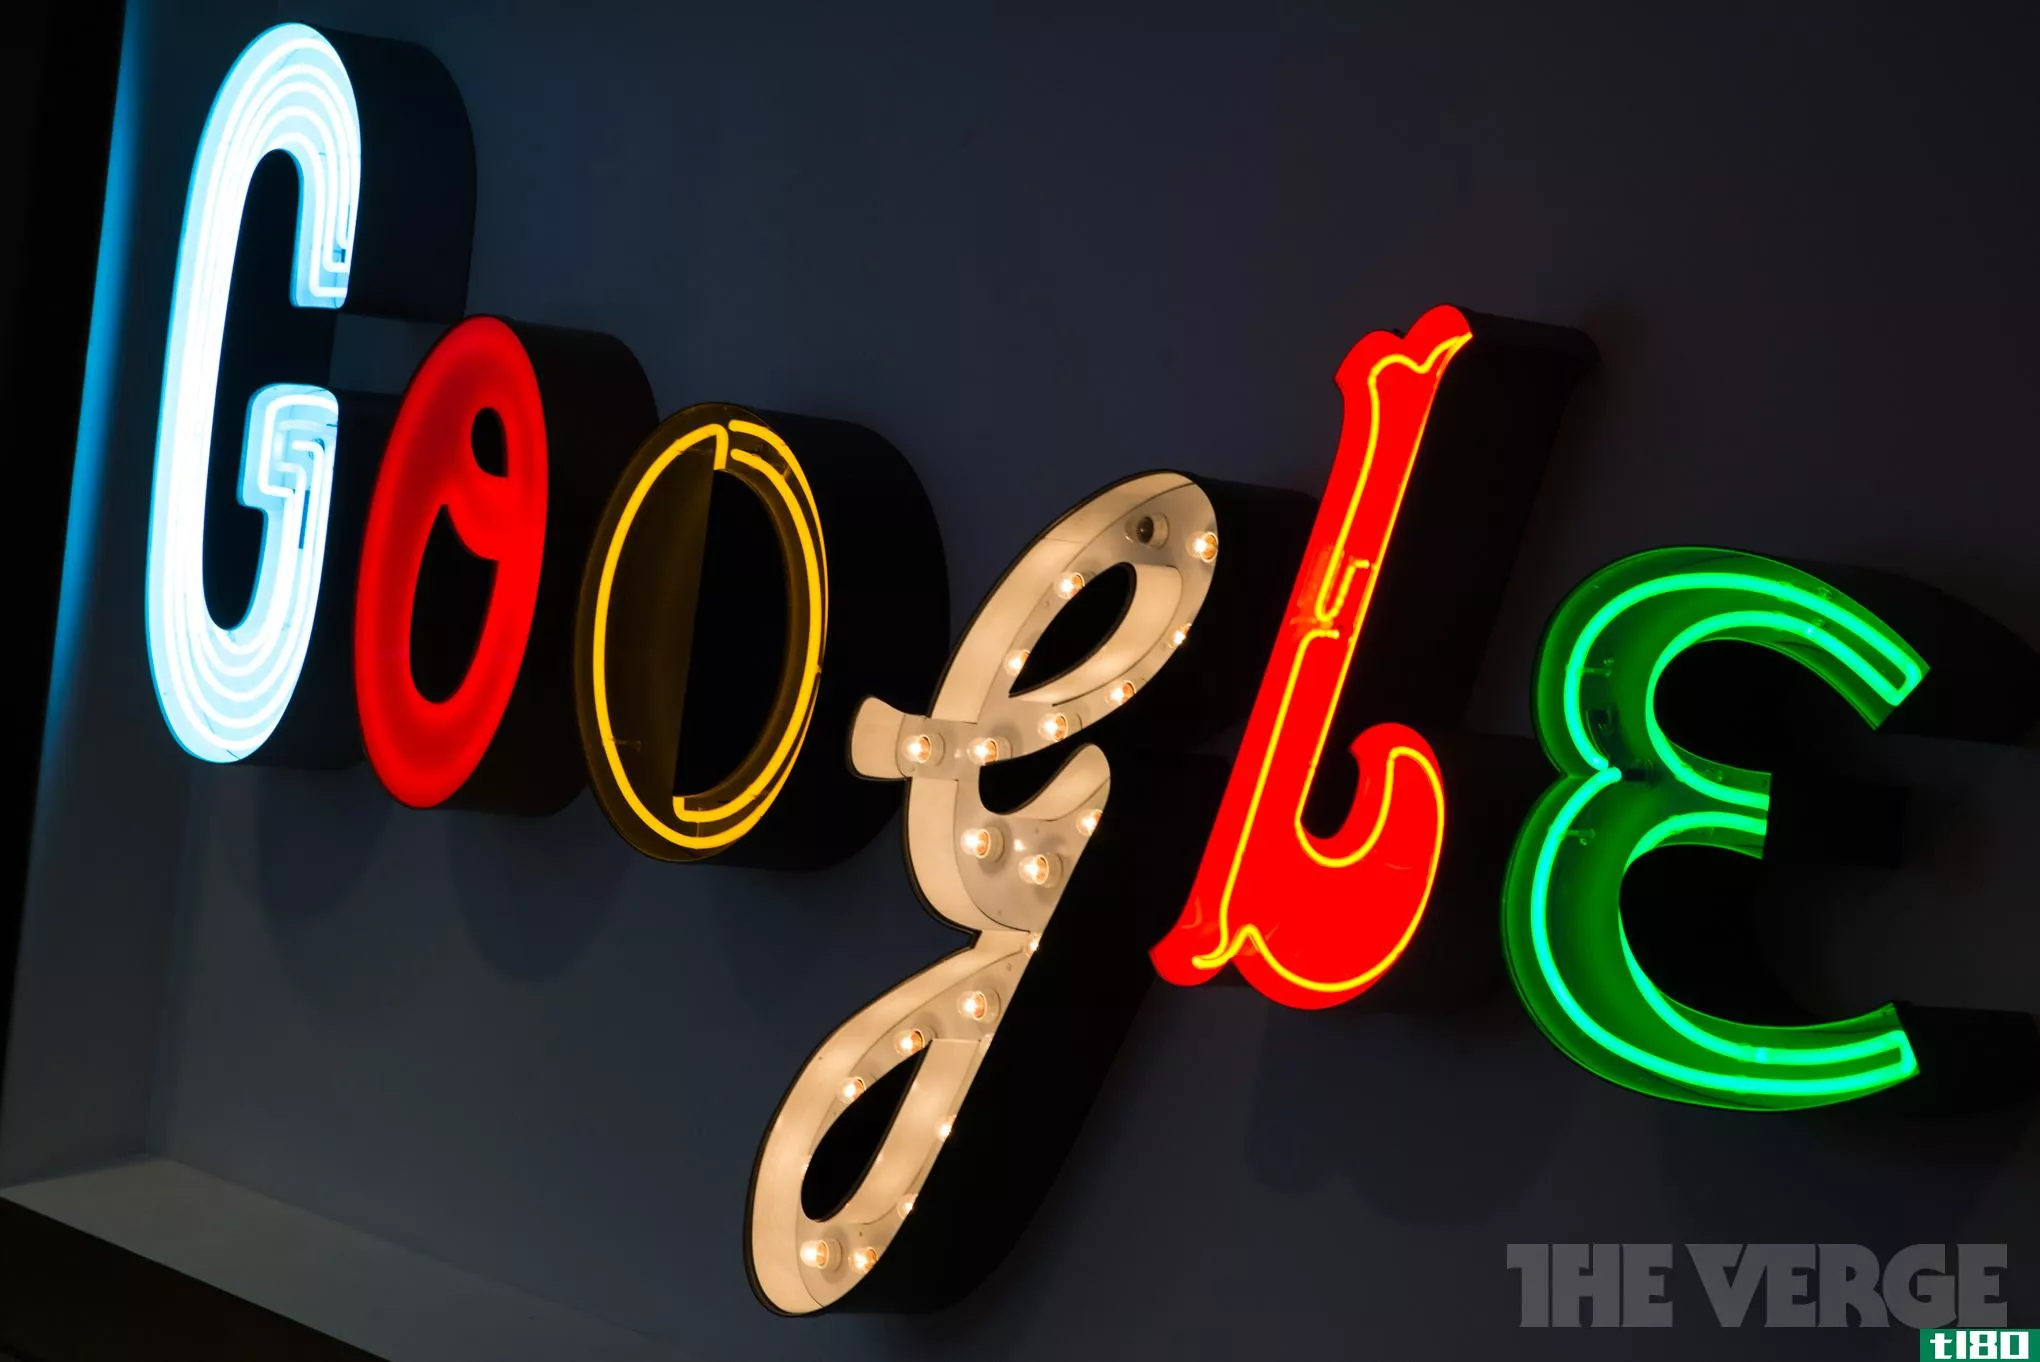 谷歌在2014年杀死了5亿条不良广告